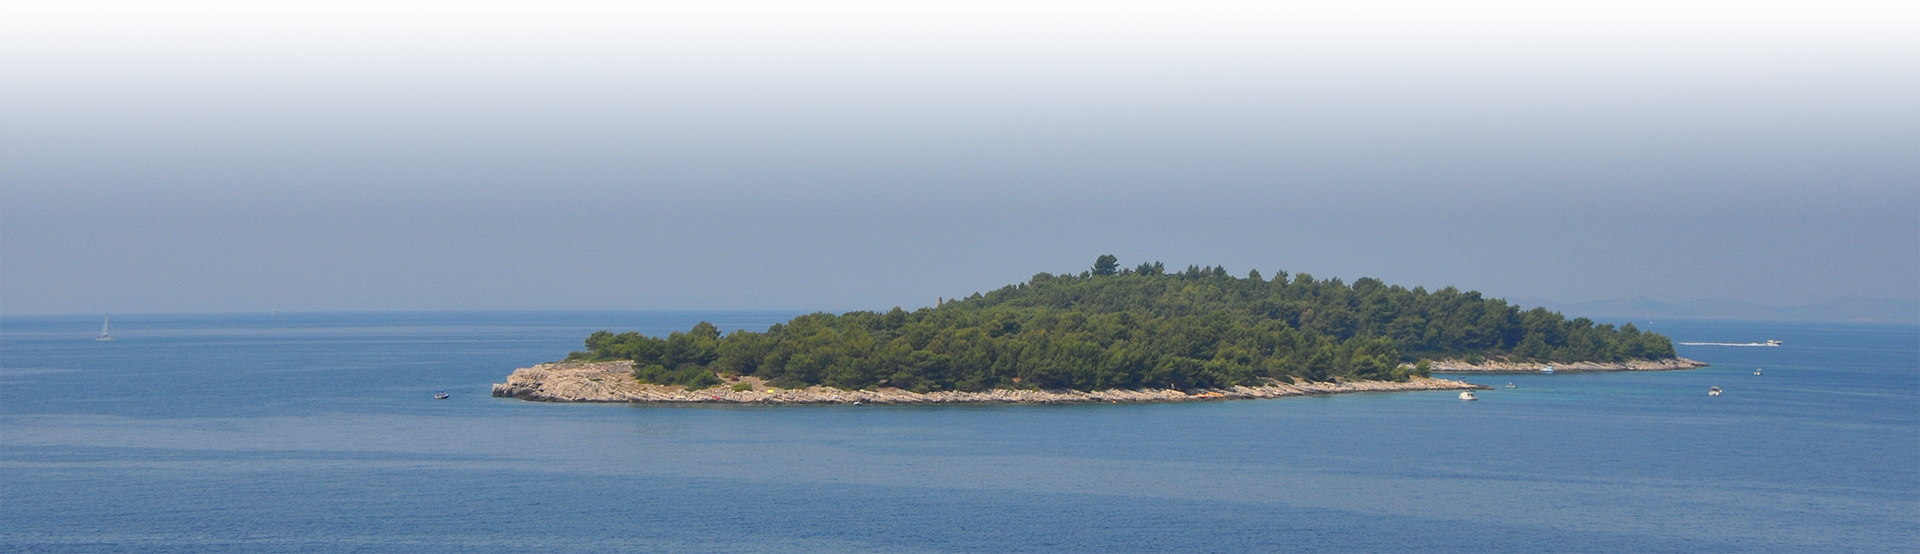 Остров в Хорватии 